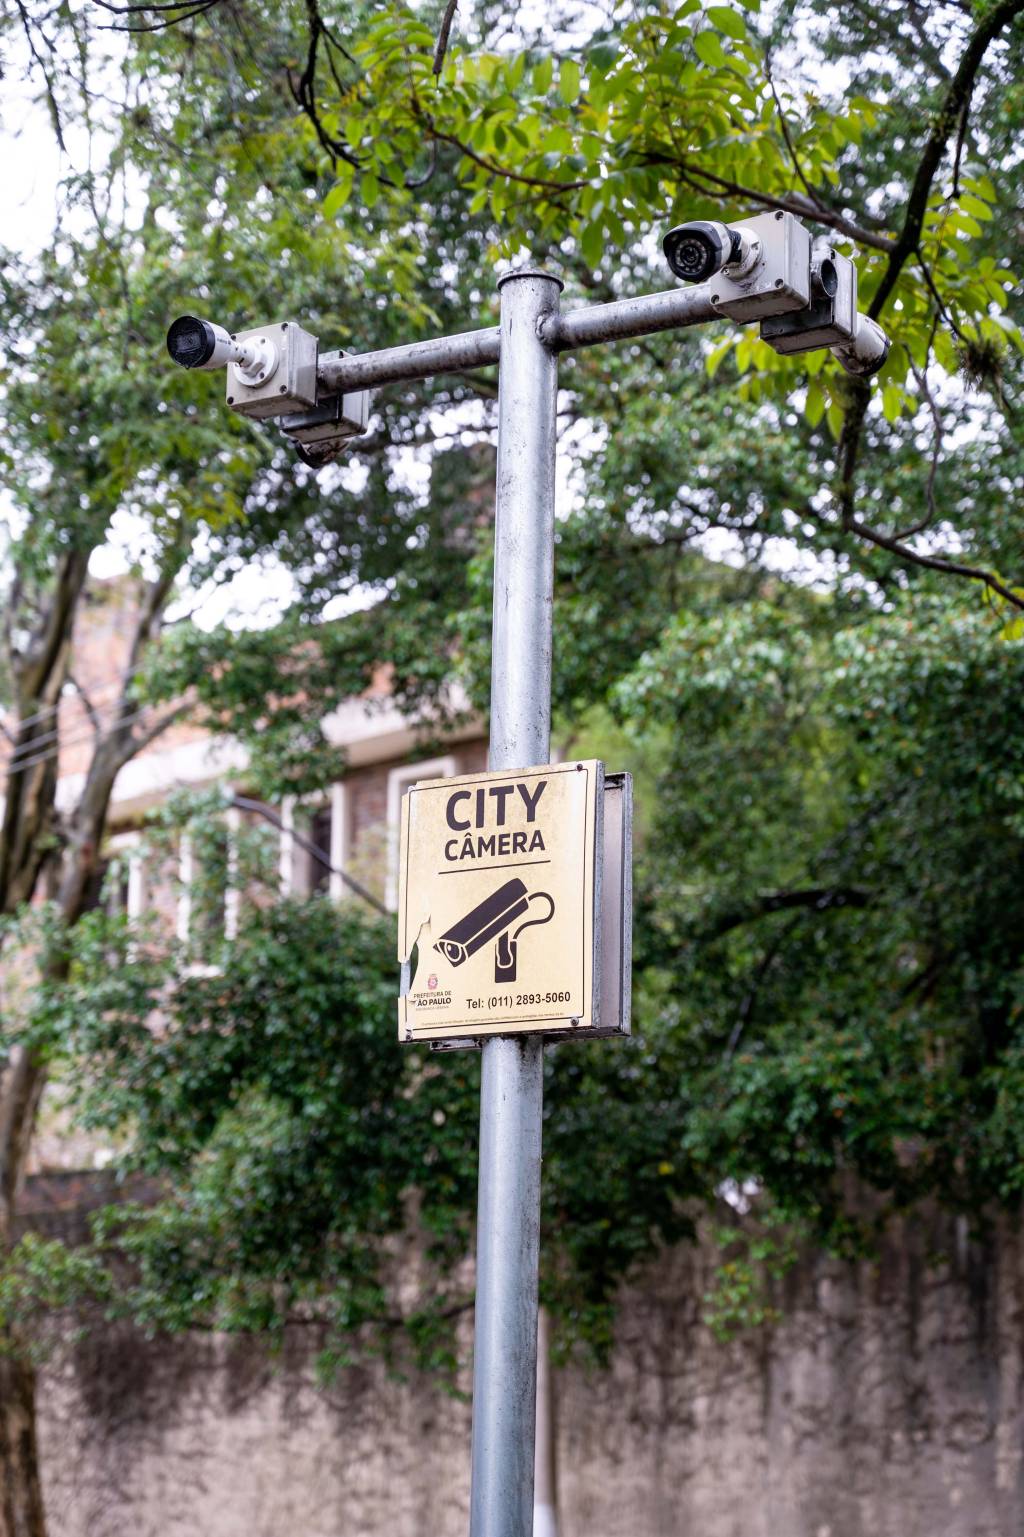 Poste com duas câmeras de monitoramento, uma em cada extremidade. Abaixo há uma placa amarela onde se lê "City Câmera"